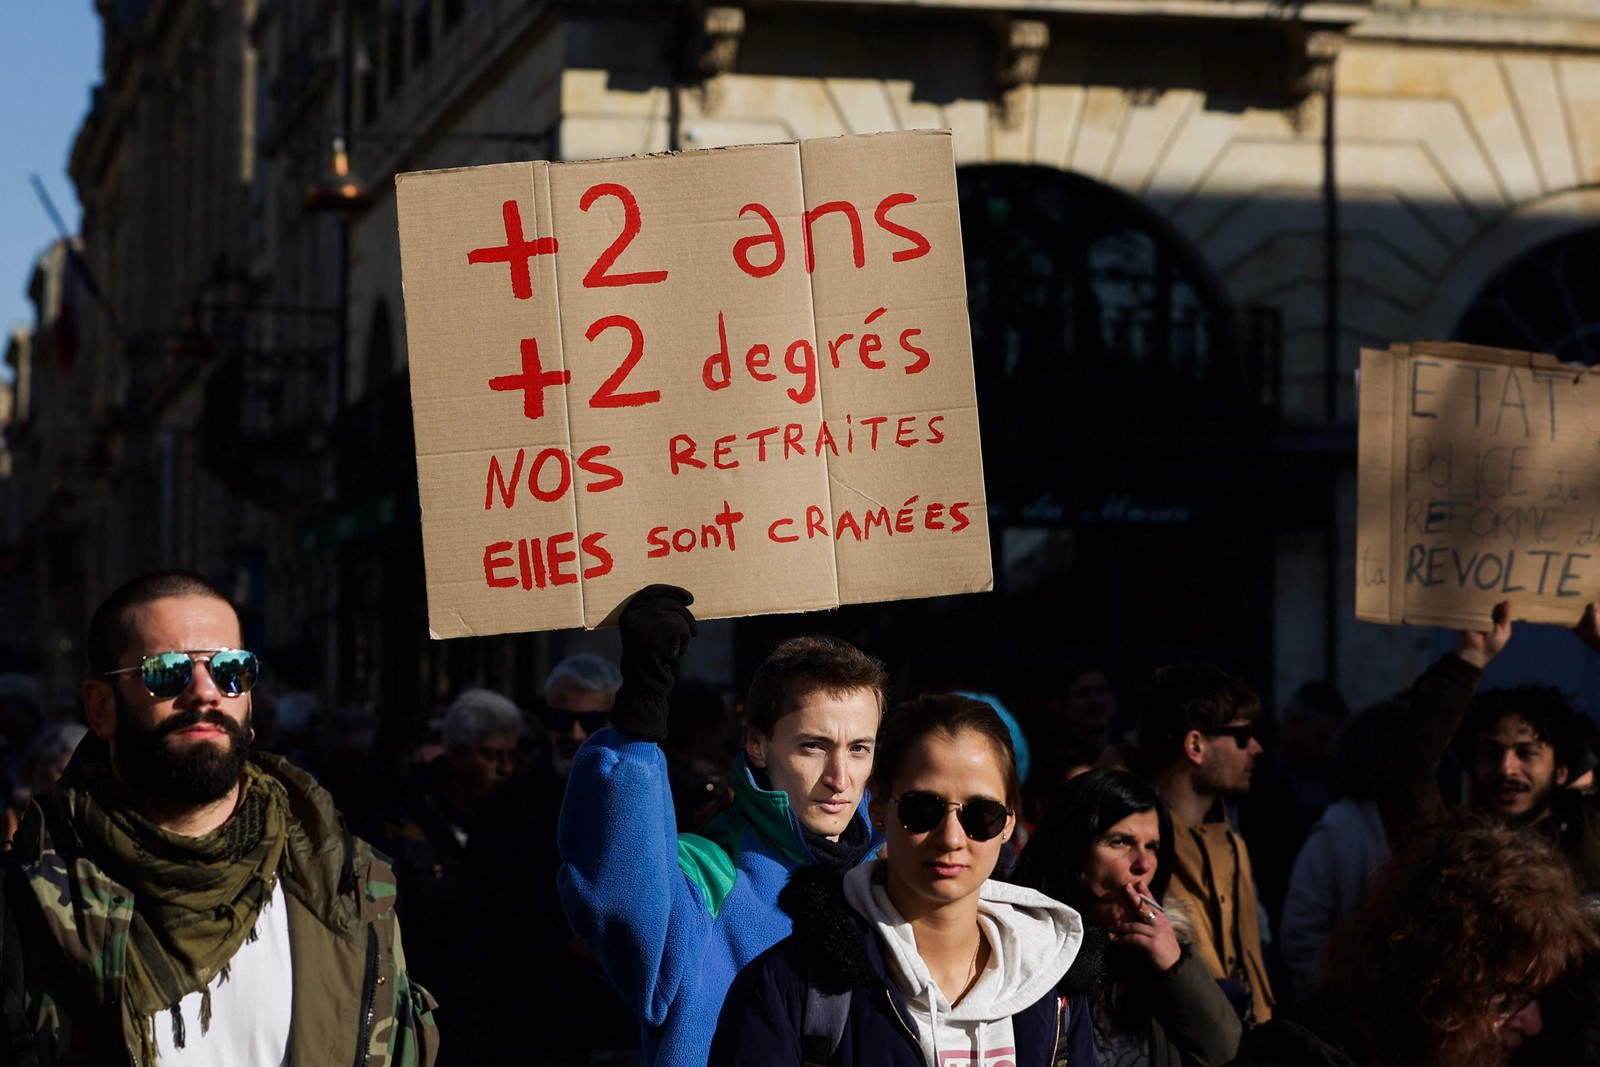 Cartaz com os dizeres "mais dois anos, mais dois diplomas, nossas pensões estão sendo queimadas" é levantado durante o protesto — Foto: Thibaud Moritz/AFP